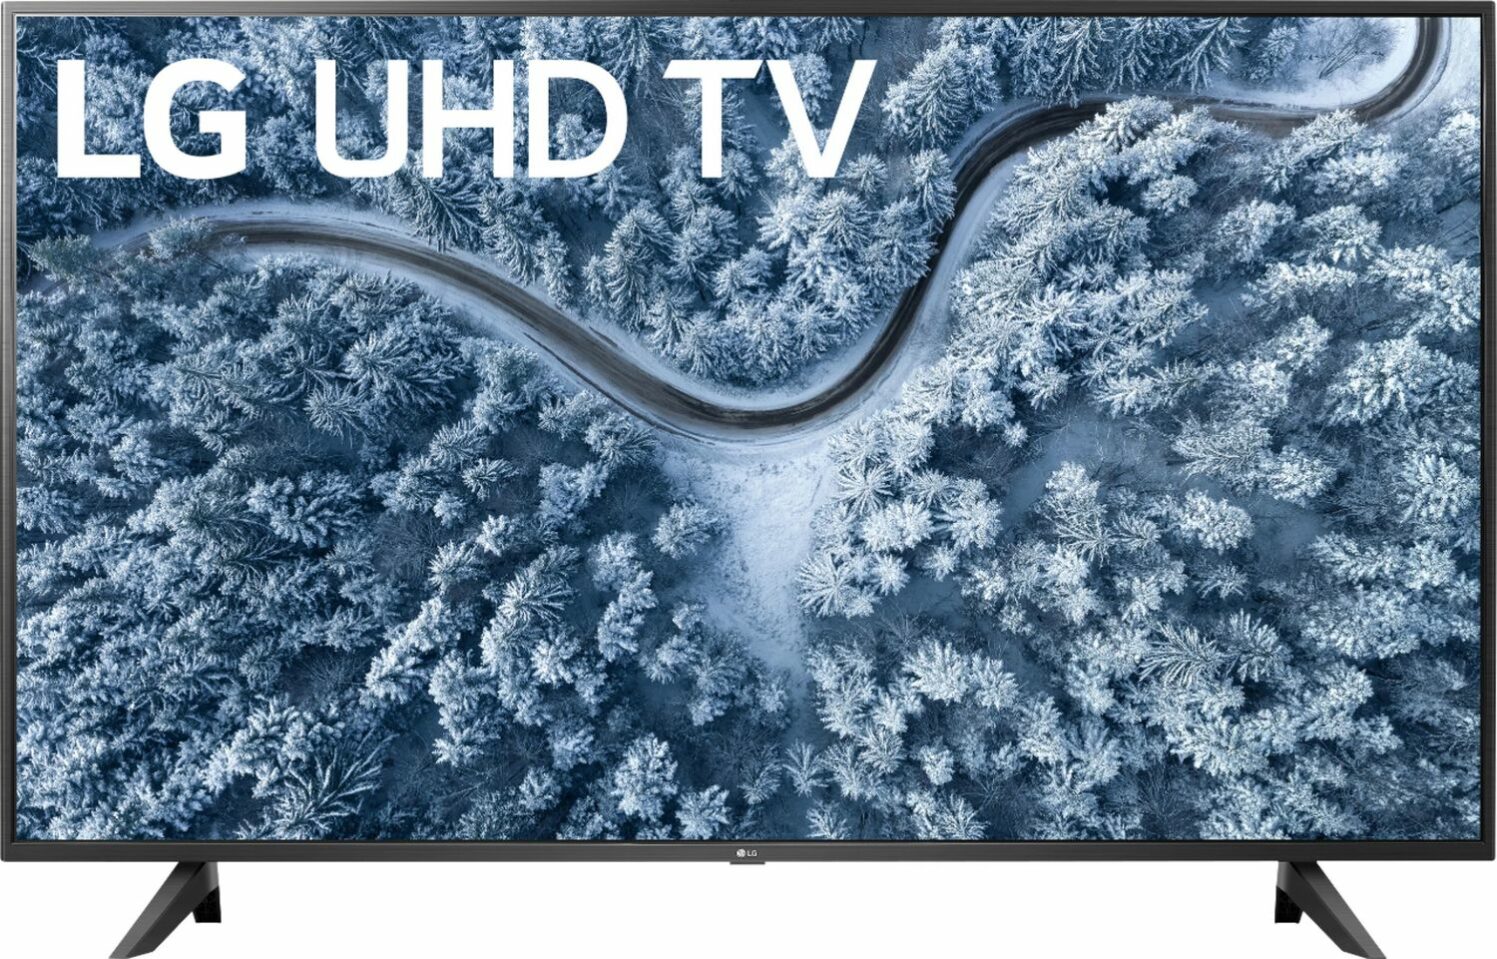 Begivenhed mistet hjerte røre ved LG UP7000PUA 4K HDR TV Review - HDTVs and More